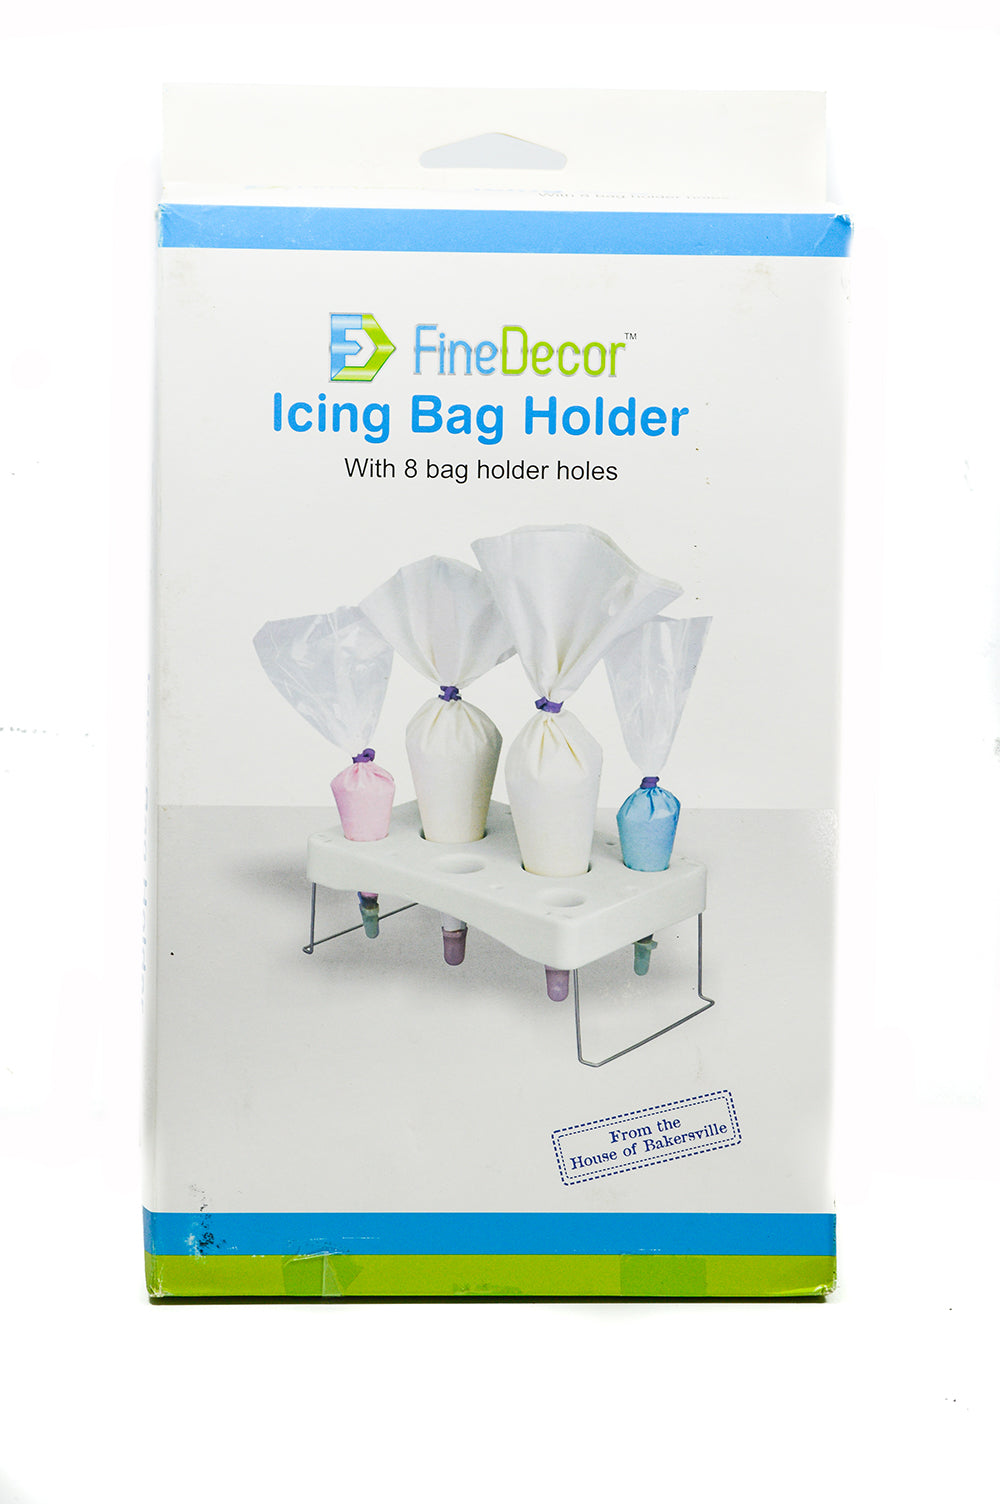 Finedecor™ Icing Bag Holder - FD 2485